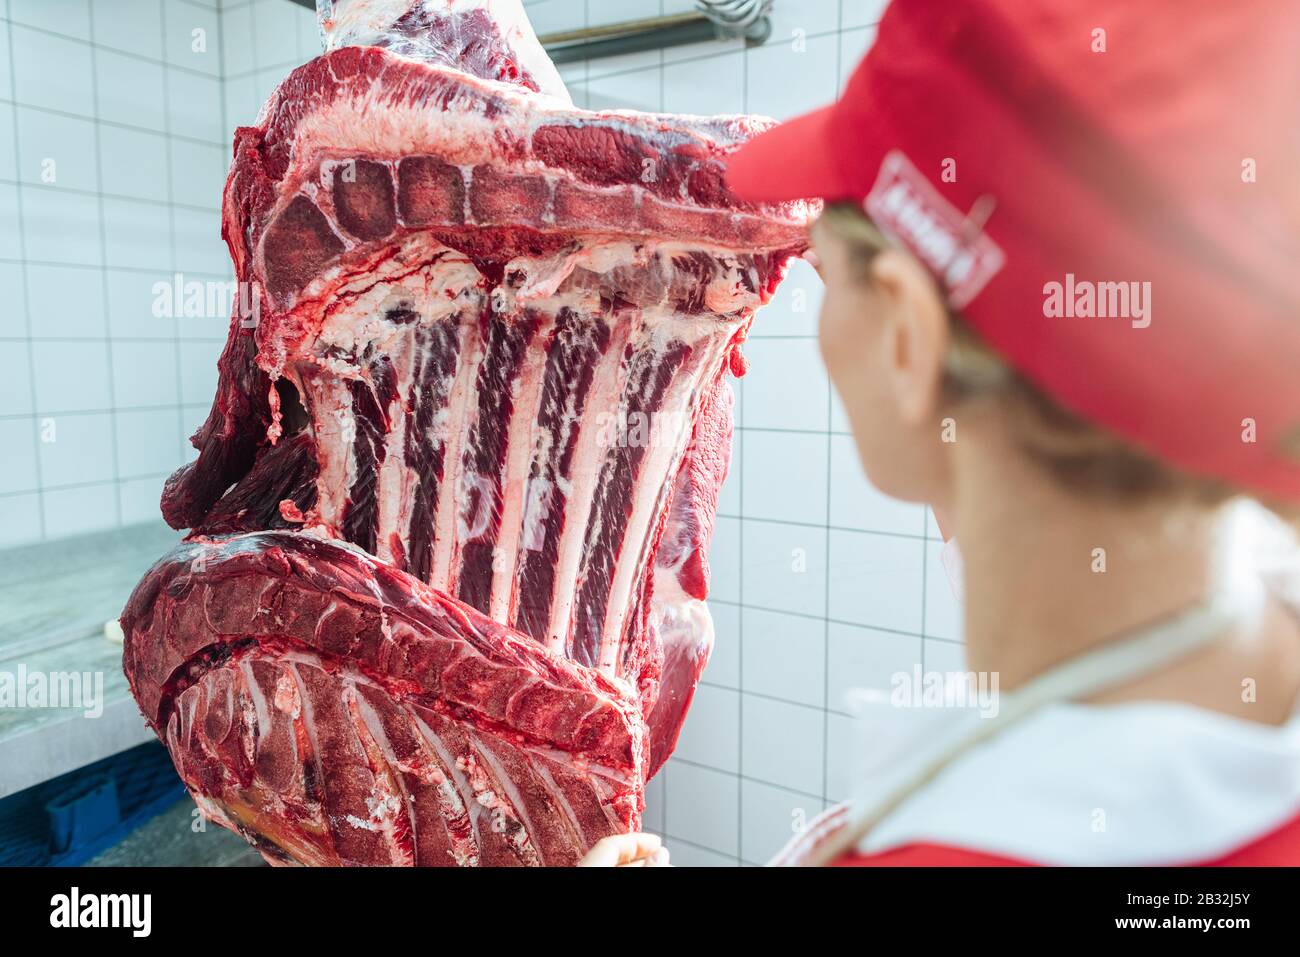 Carnicero mujer inspeccionando el pedazo de carne a procesar Foto de stock